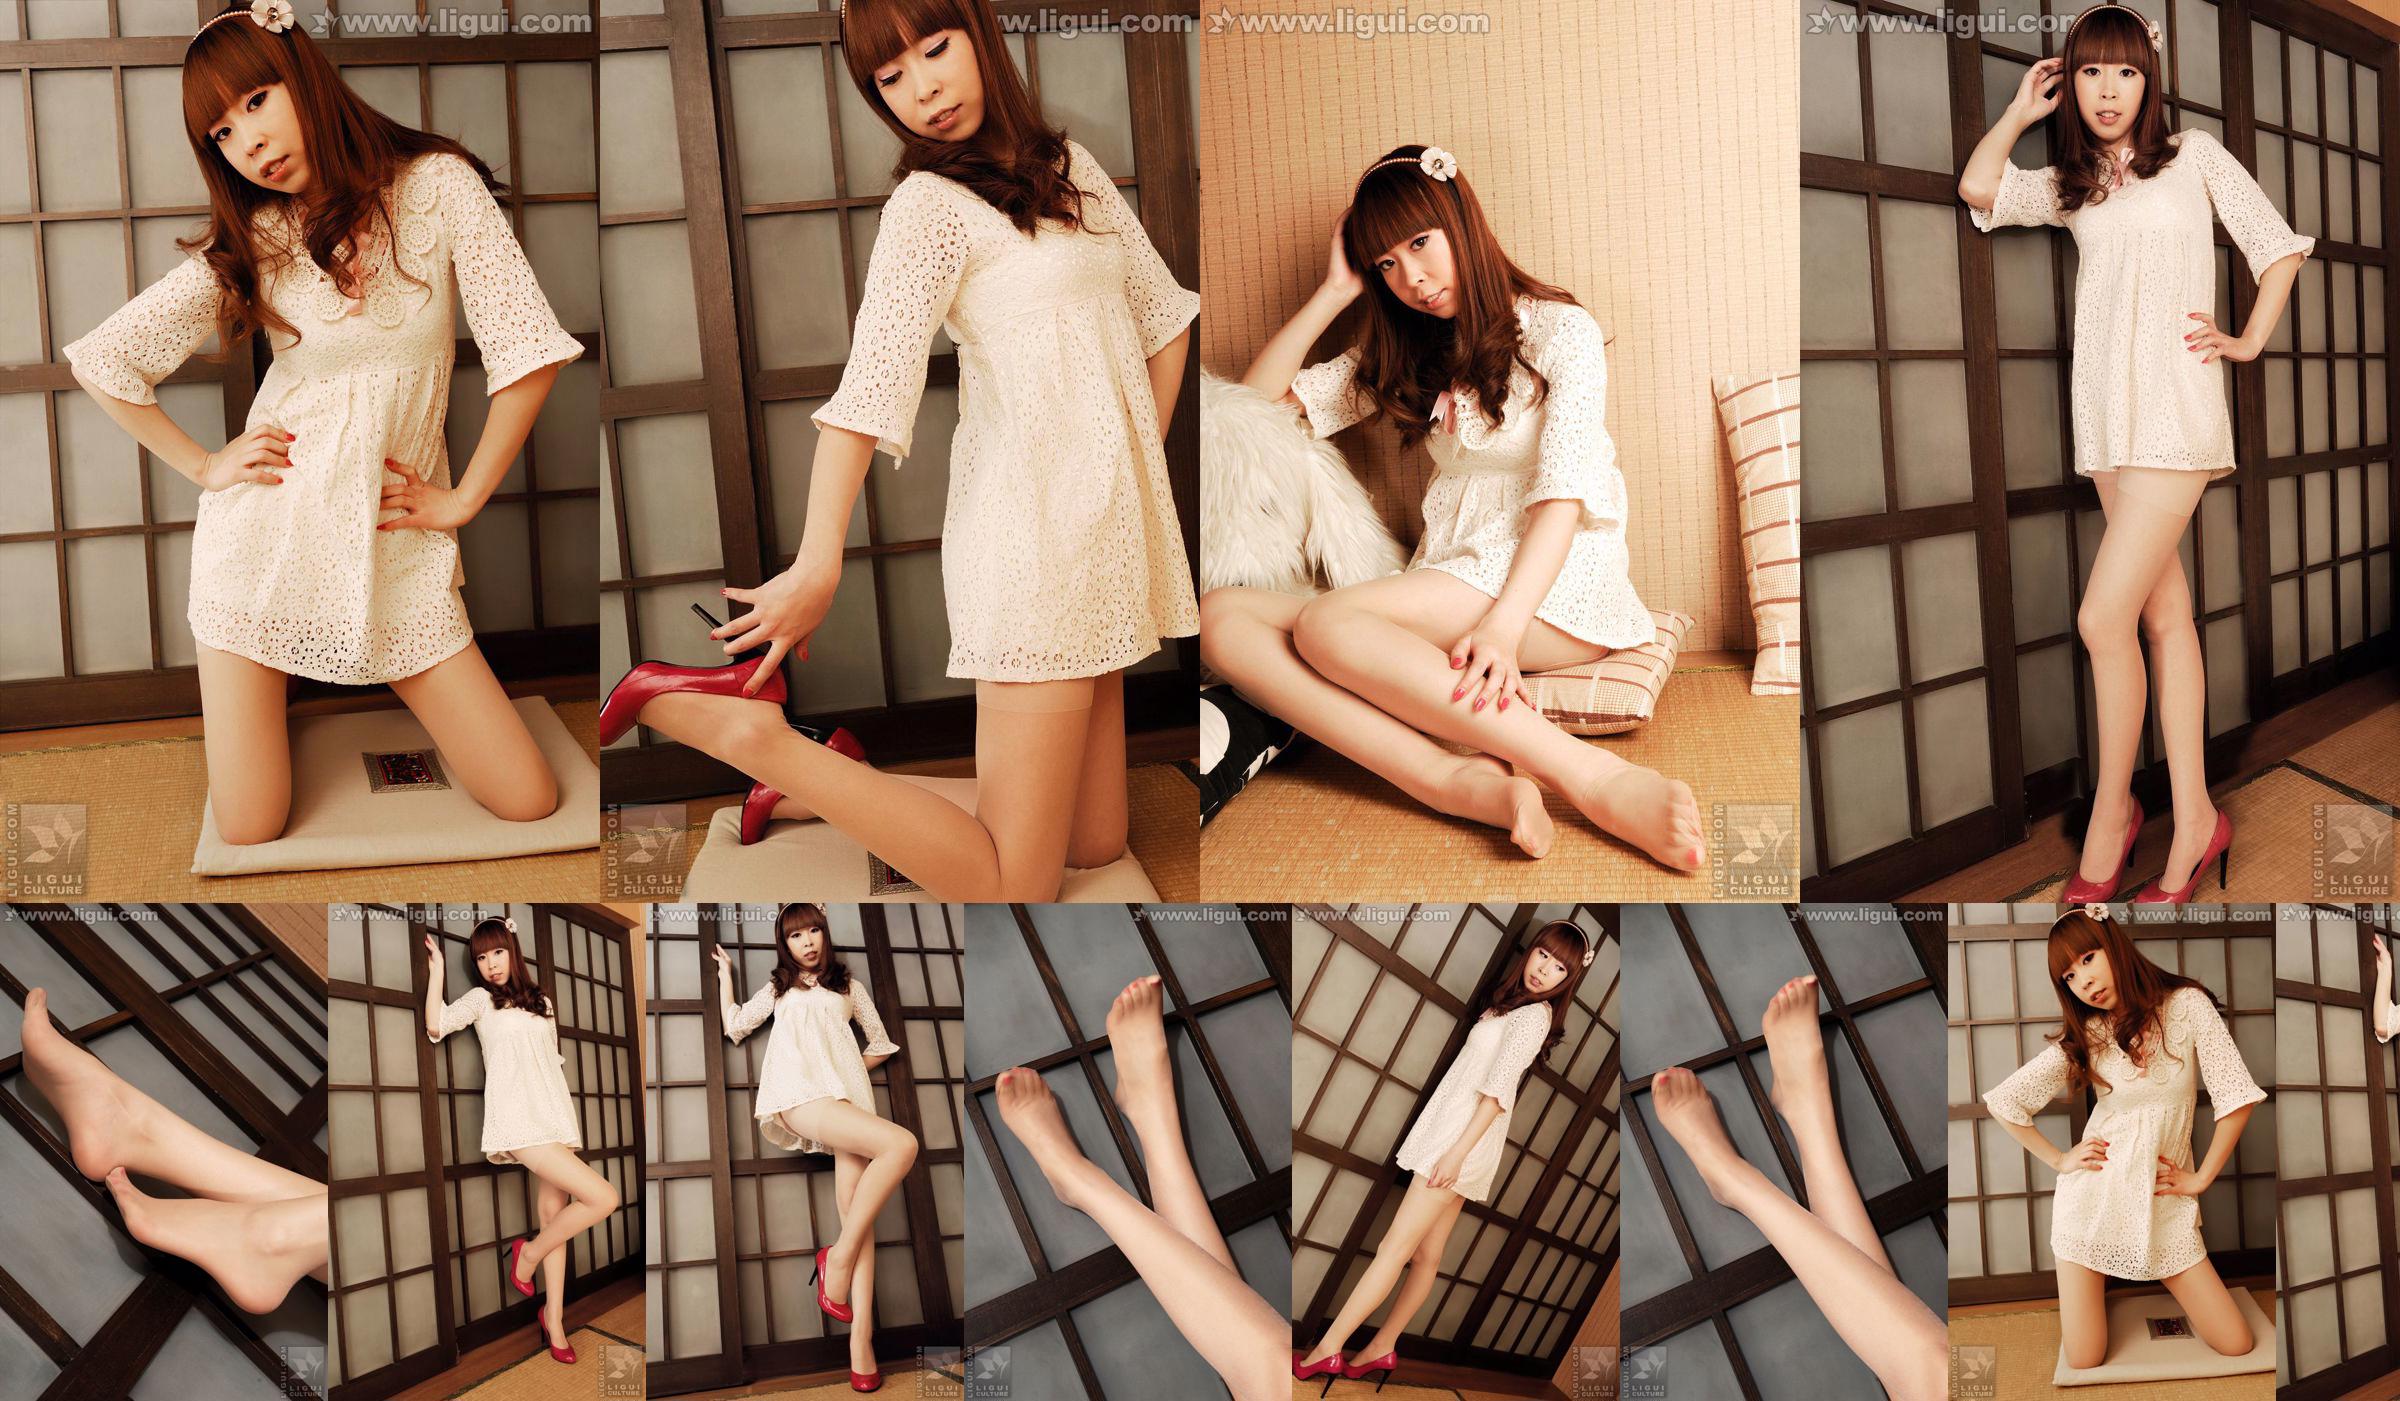 Modell Vikcy "Die Versuchung des japanischen Stils" [丽 柜 LiGui] Schöne Beine und Jadefuß Foto Bild No.05819b Seite 11